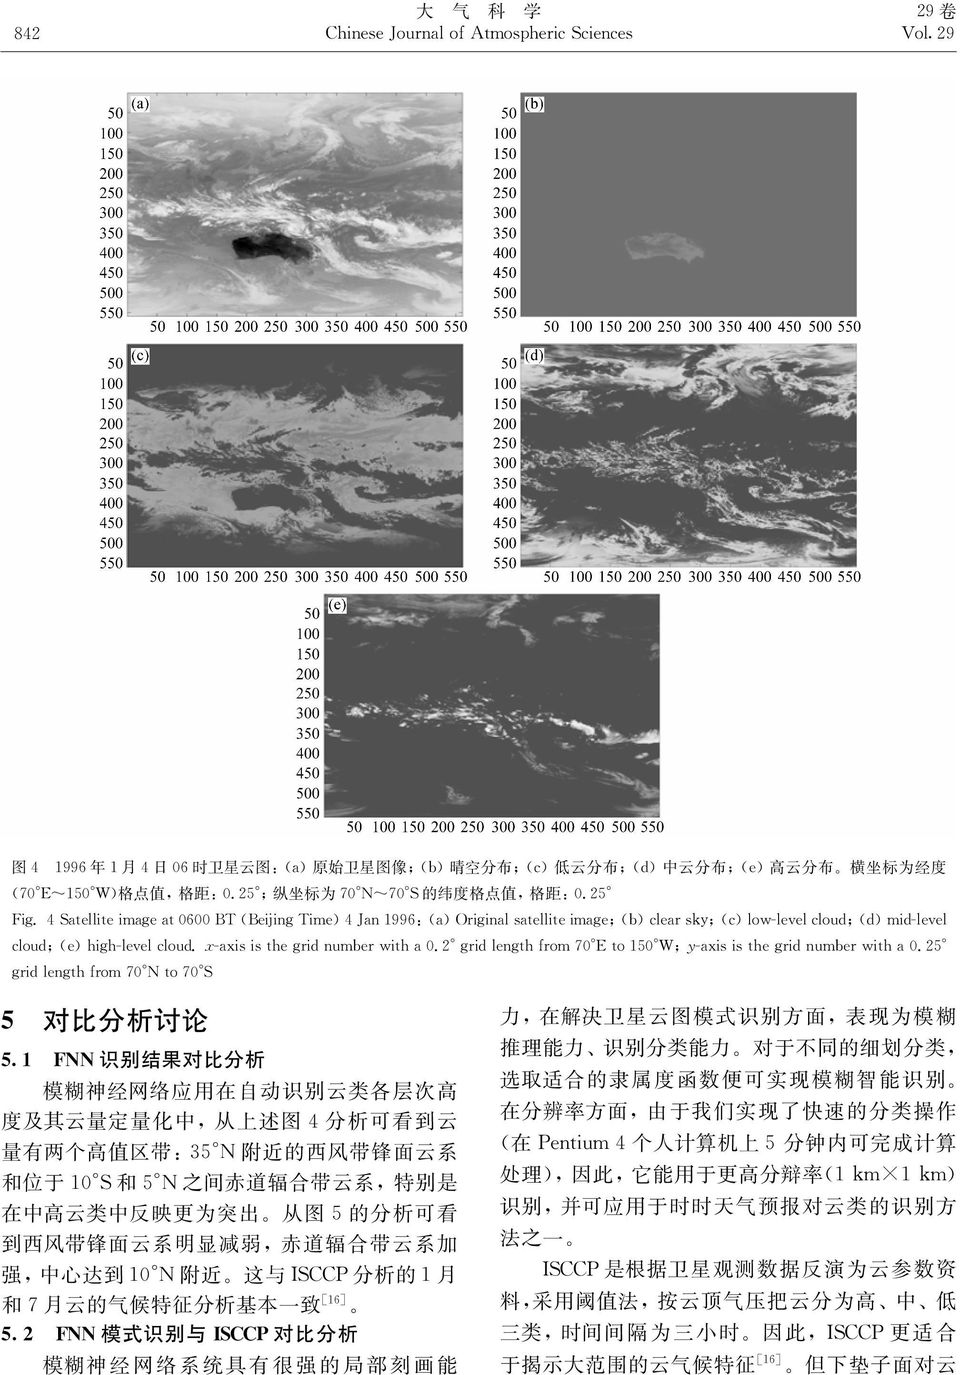 之 间 赤 道 辐 合 带 云 系 特 别 是 在 中 高 云 类 中 反 映 更 为 突 出 从 图 的 分 析 可 看 到 西 风 带 锋 面 云 系 明 显 减 弱 赤 道 辐 合 带 云 系 加 强 中 心 达 到. 附 近 这 与 % 分 析 的 月 和 月 云 的 气 候 特 征 分 析 基 本 一 致 -*)& 模 式 识 别 与.